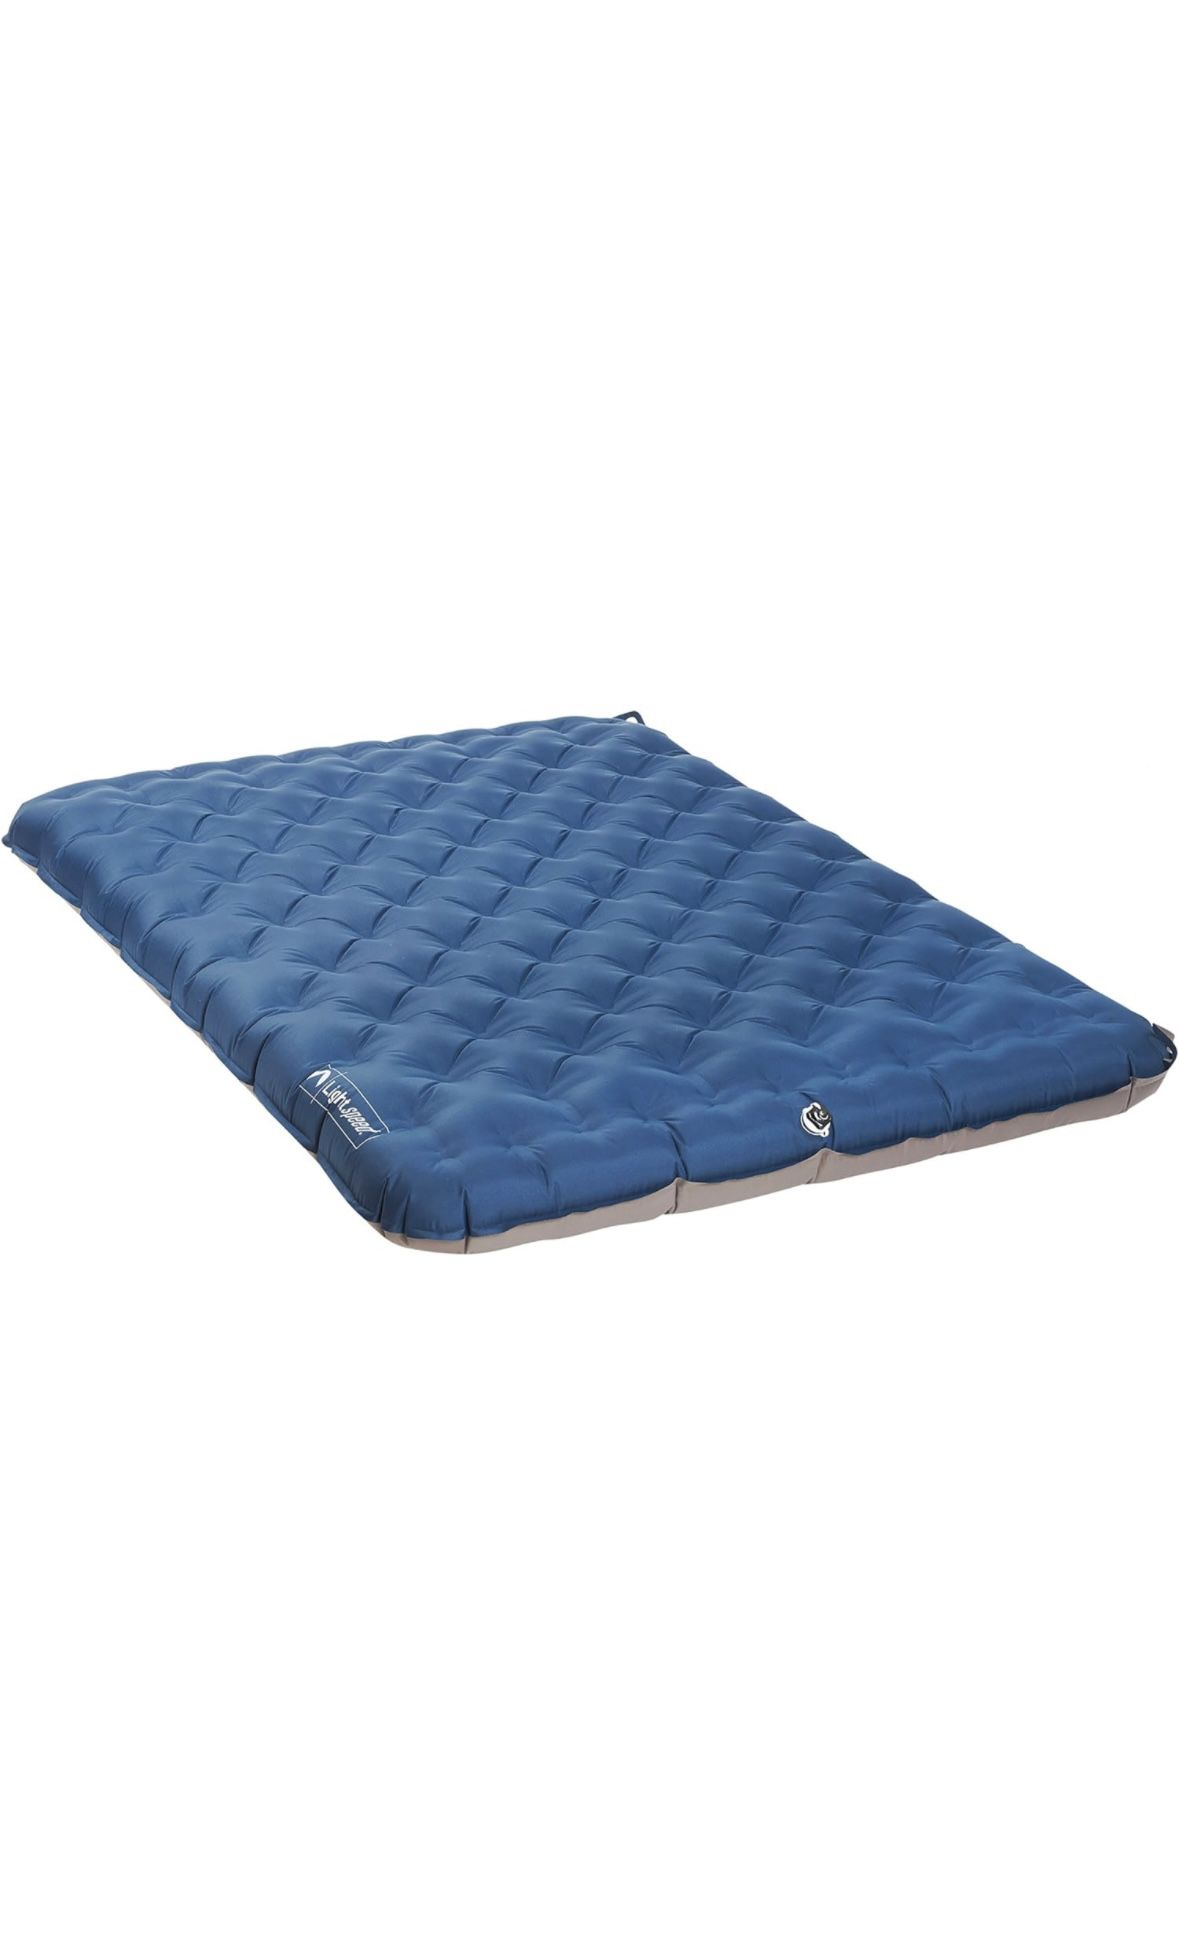 Air mattress 